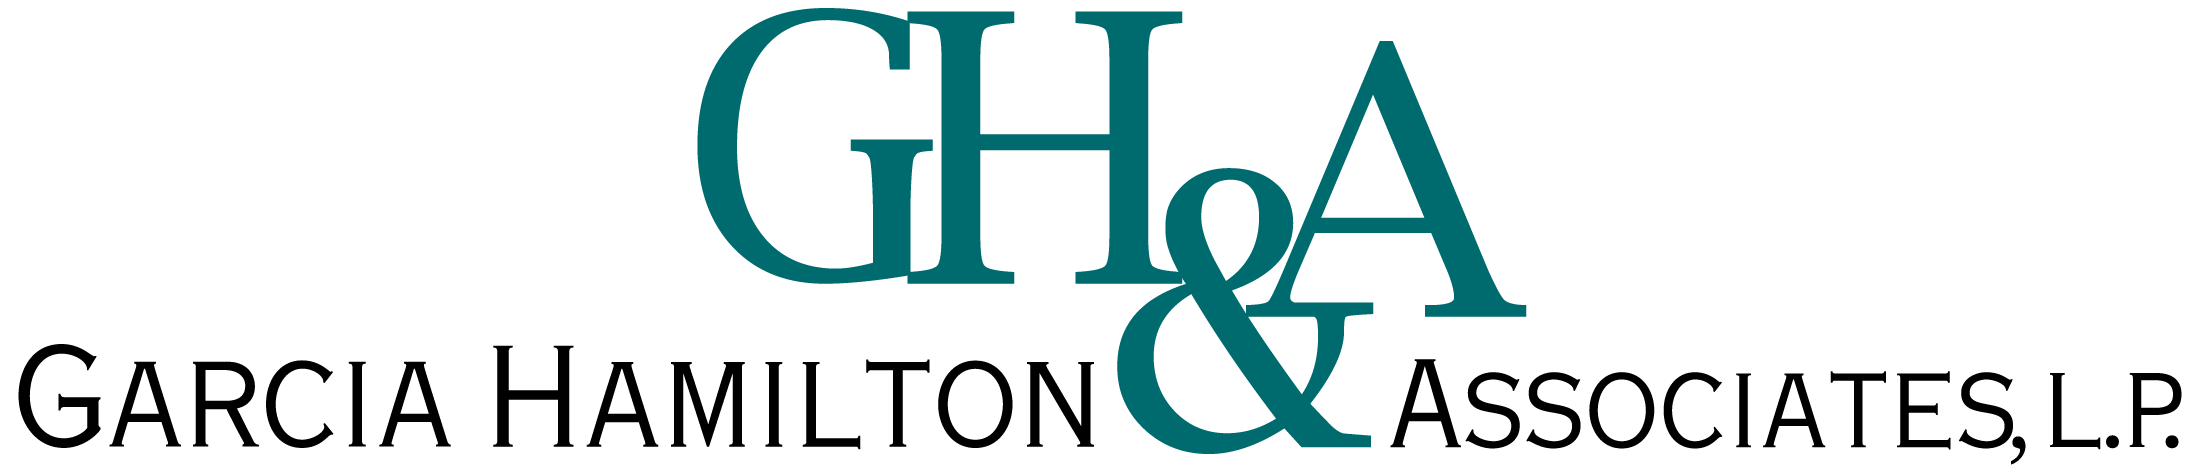 garcia-hamilton-and-associates-logo-03